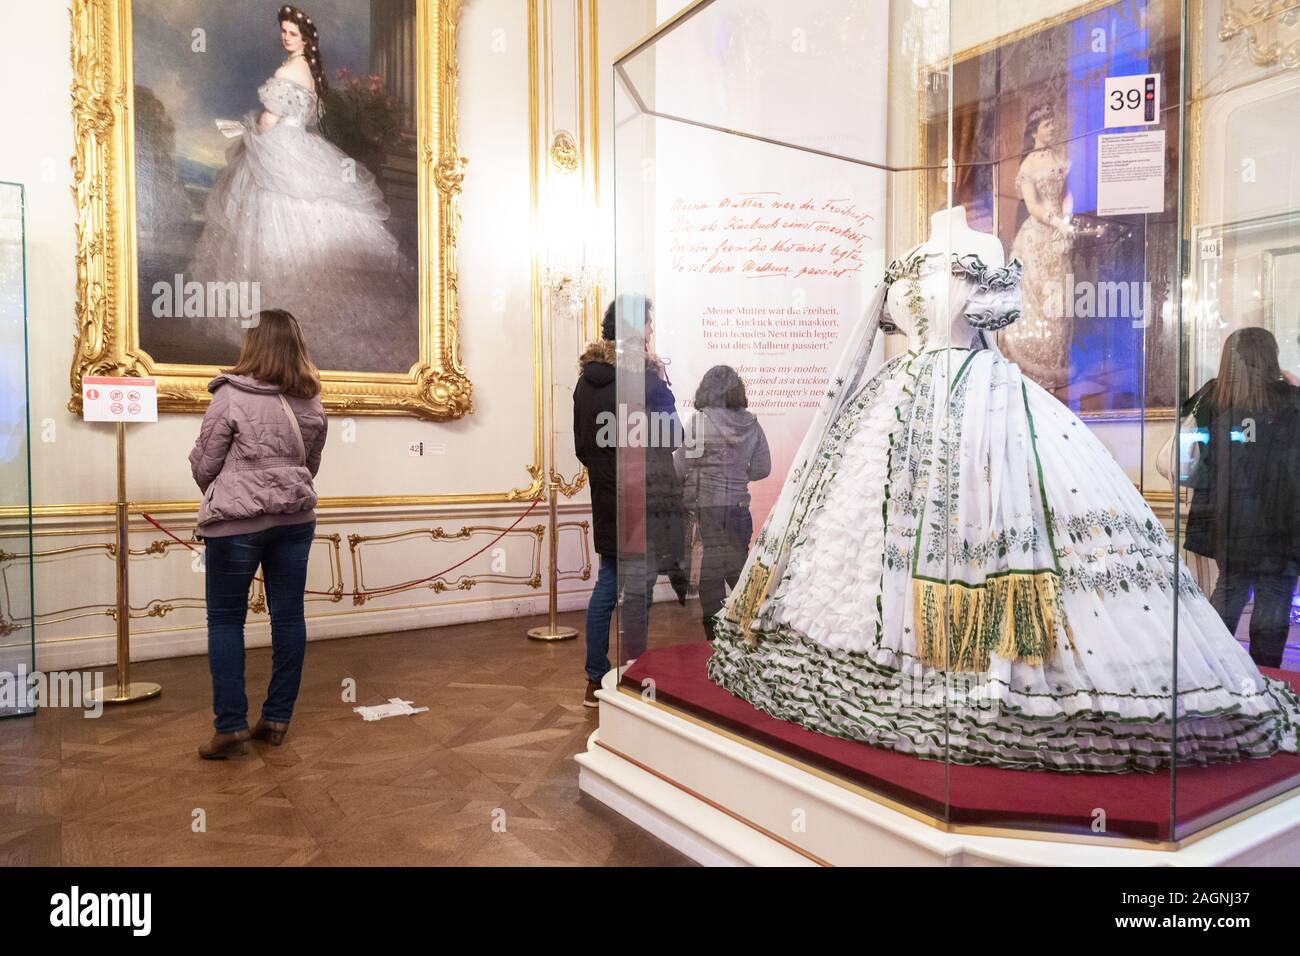 Personnes regardant des expositions au Musée Sisi Vienne, intérieur; Palais Hofburg, Vienne Autriche Europe Banque D'Images